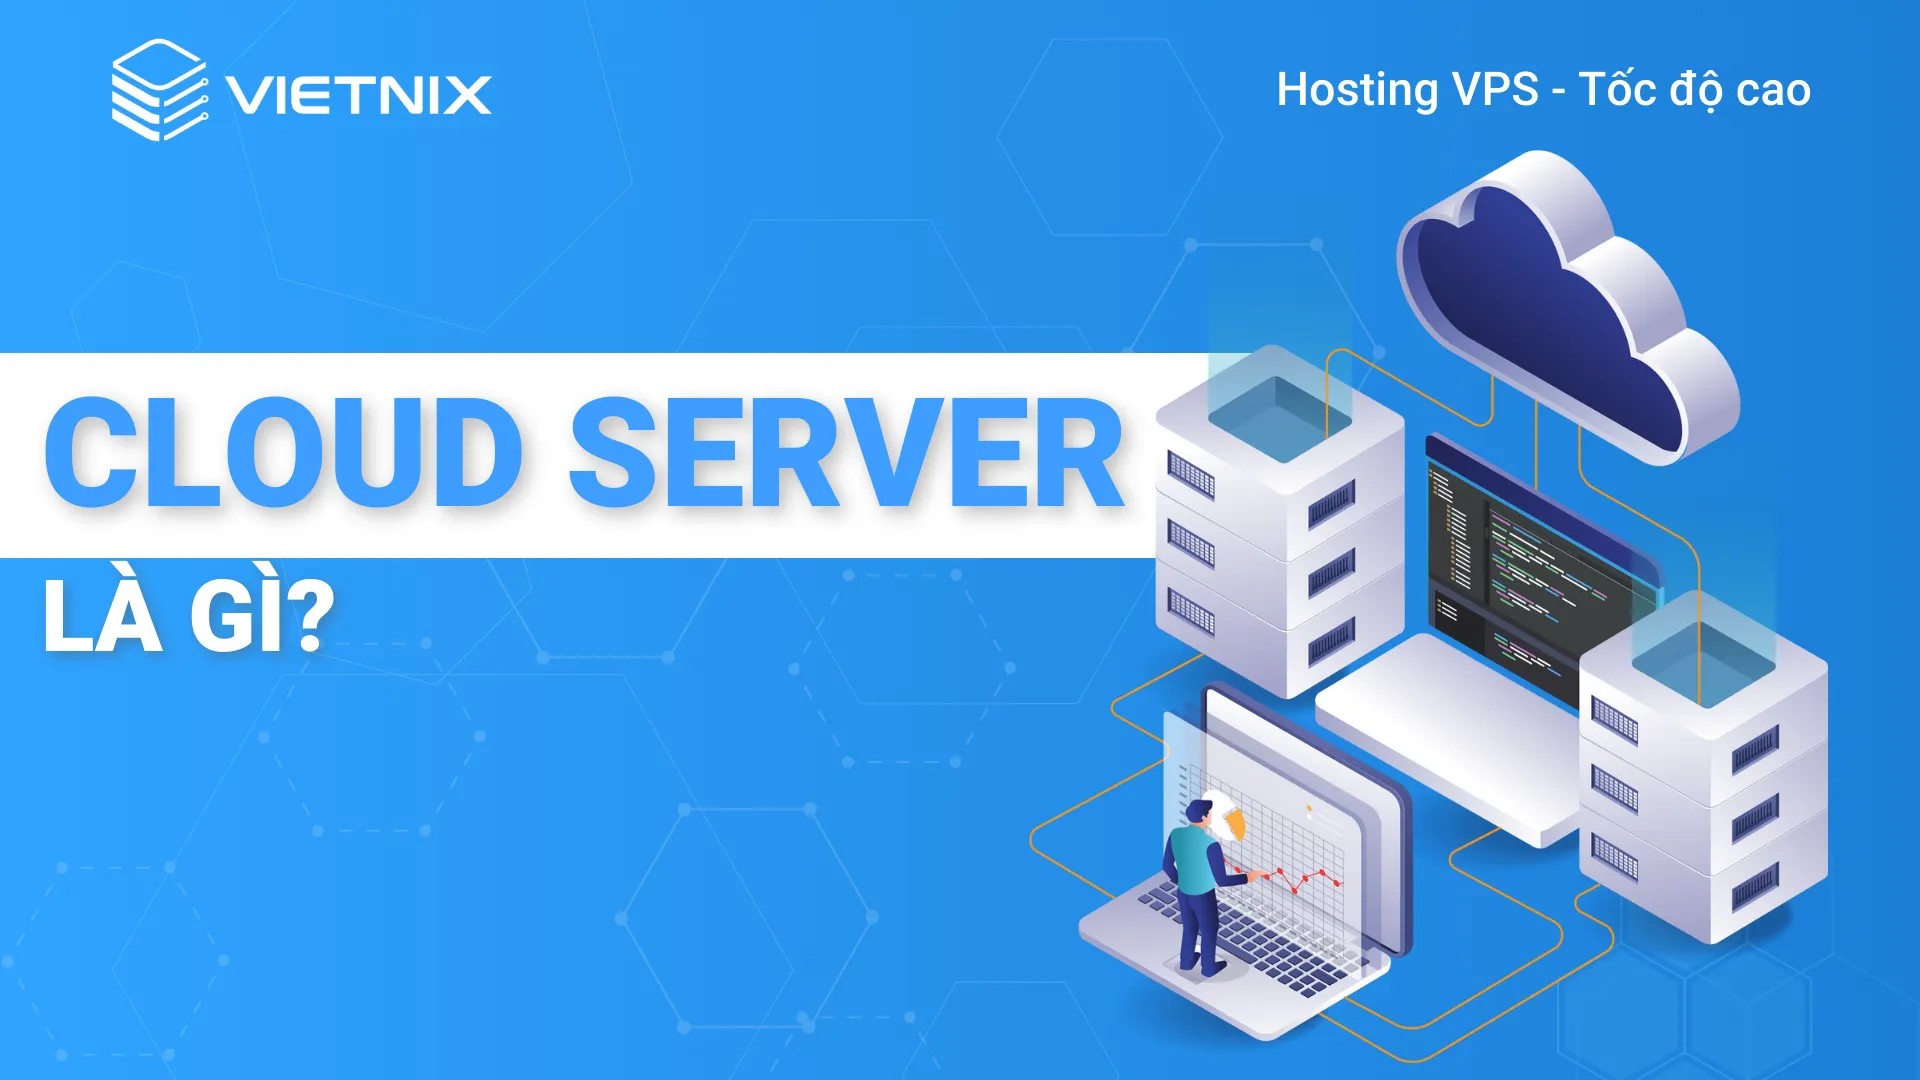 Cloud Server dùng để lưu trữ tài nguyên và dữ liệu trên nền tảng điện toán đám mây